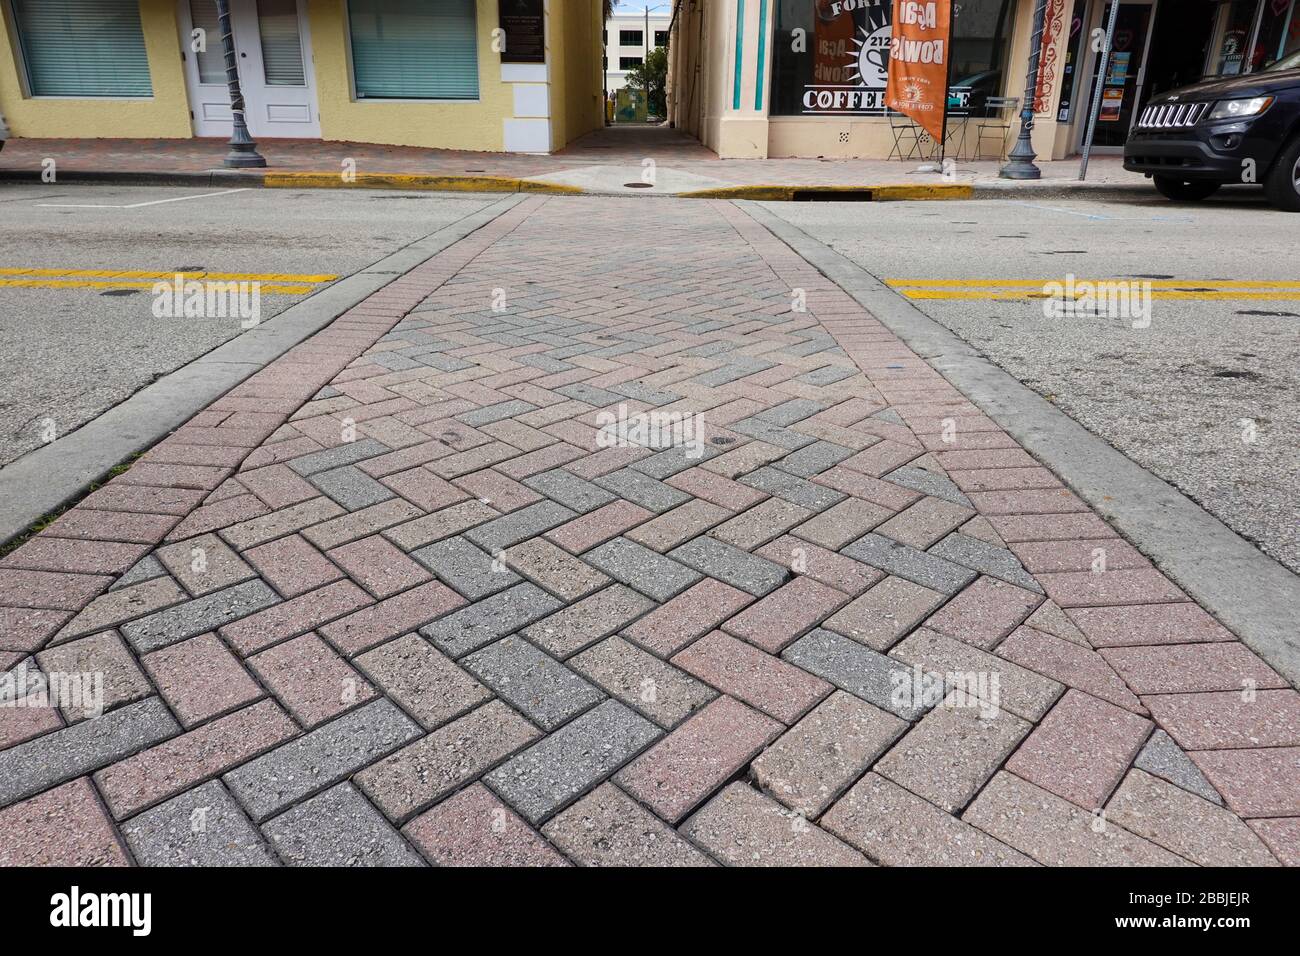 Pi. Pierce, FL/USA-1/25/20: Une promenade piétonne dans le centre-ville de ft. Pierce, FL fait de pavés en brique dans un motif à chevrons. Banque D'Images